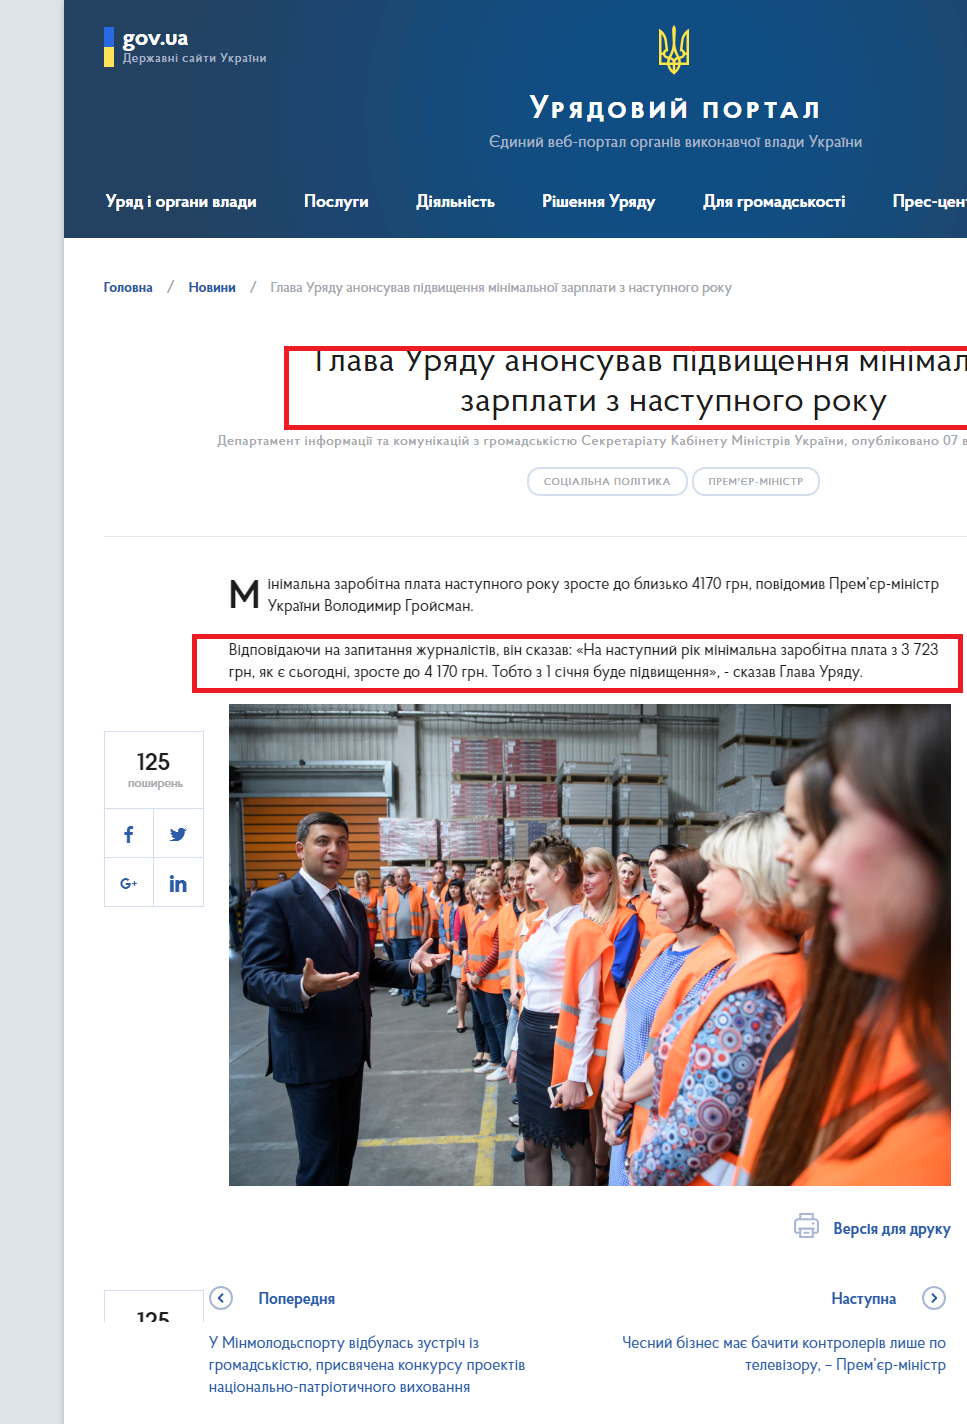 https://www.kmu.gov.ua/ua/news/glava-uryadu-anonsuvav-pidvishchennya-minimalnoyi-zarplati-z-nastupnogo-roku